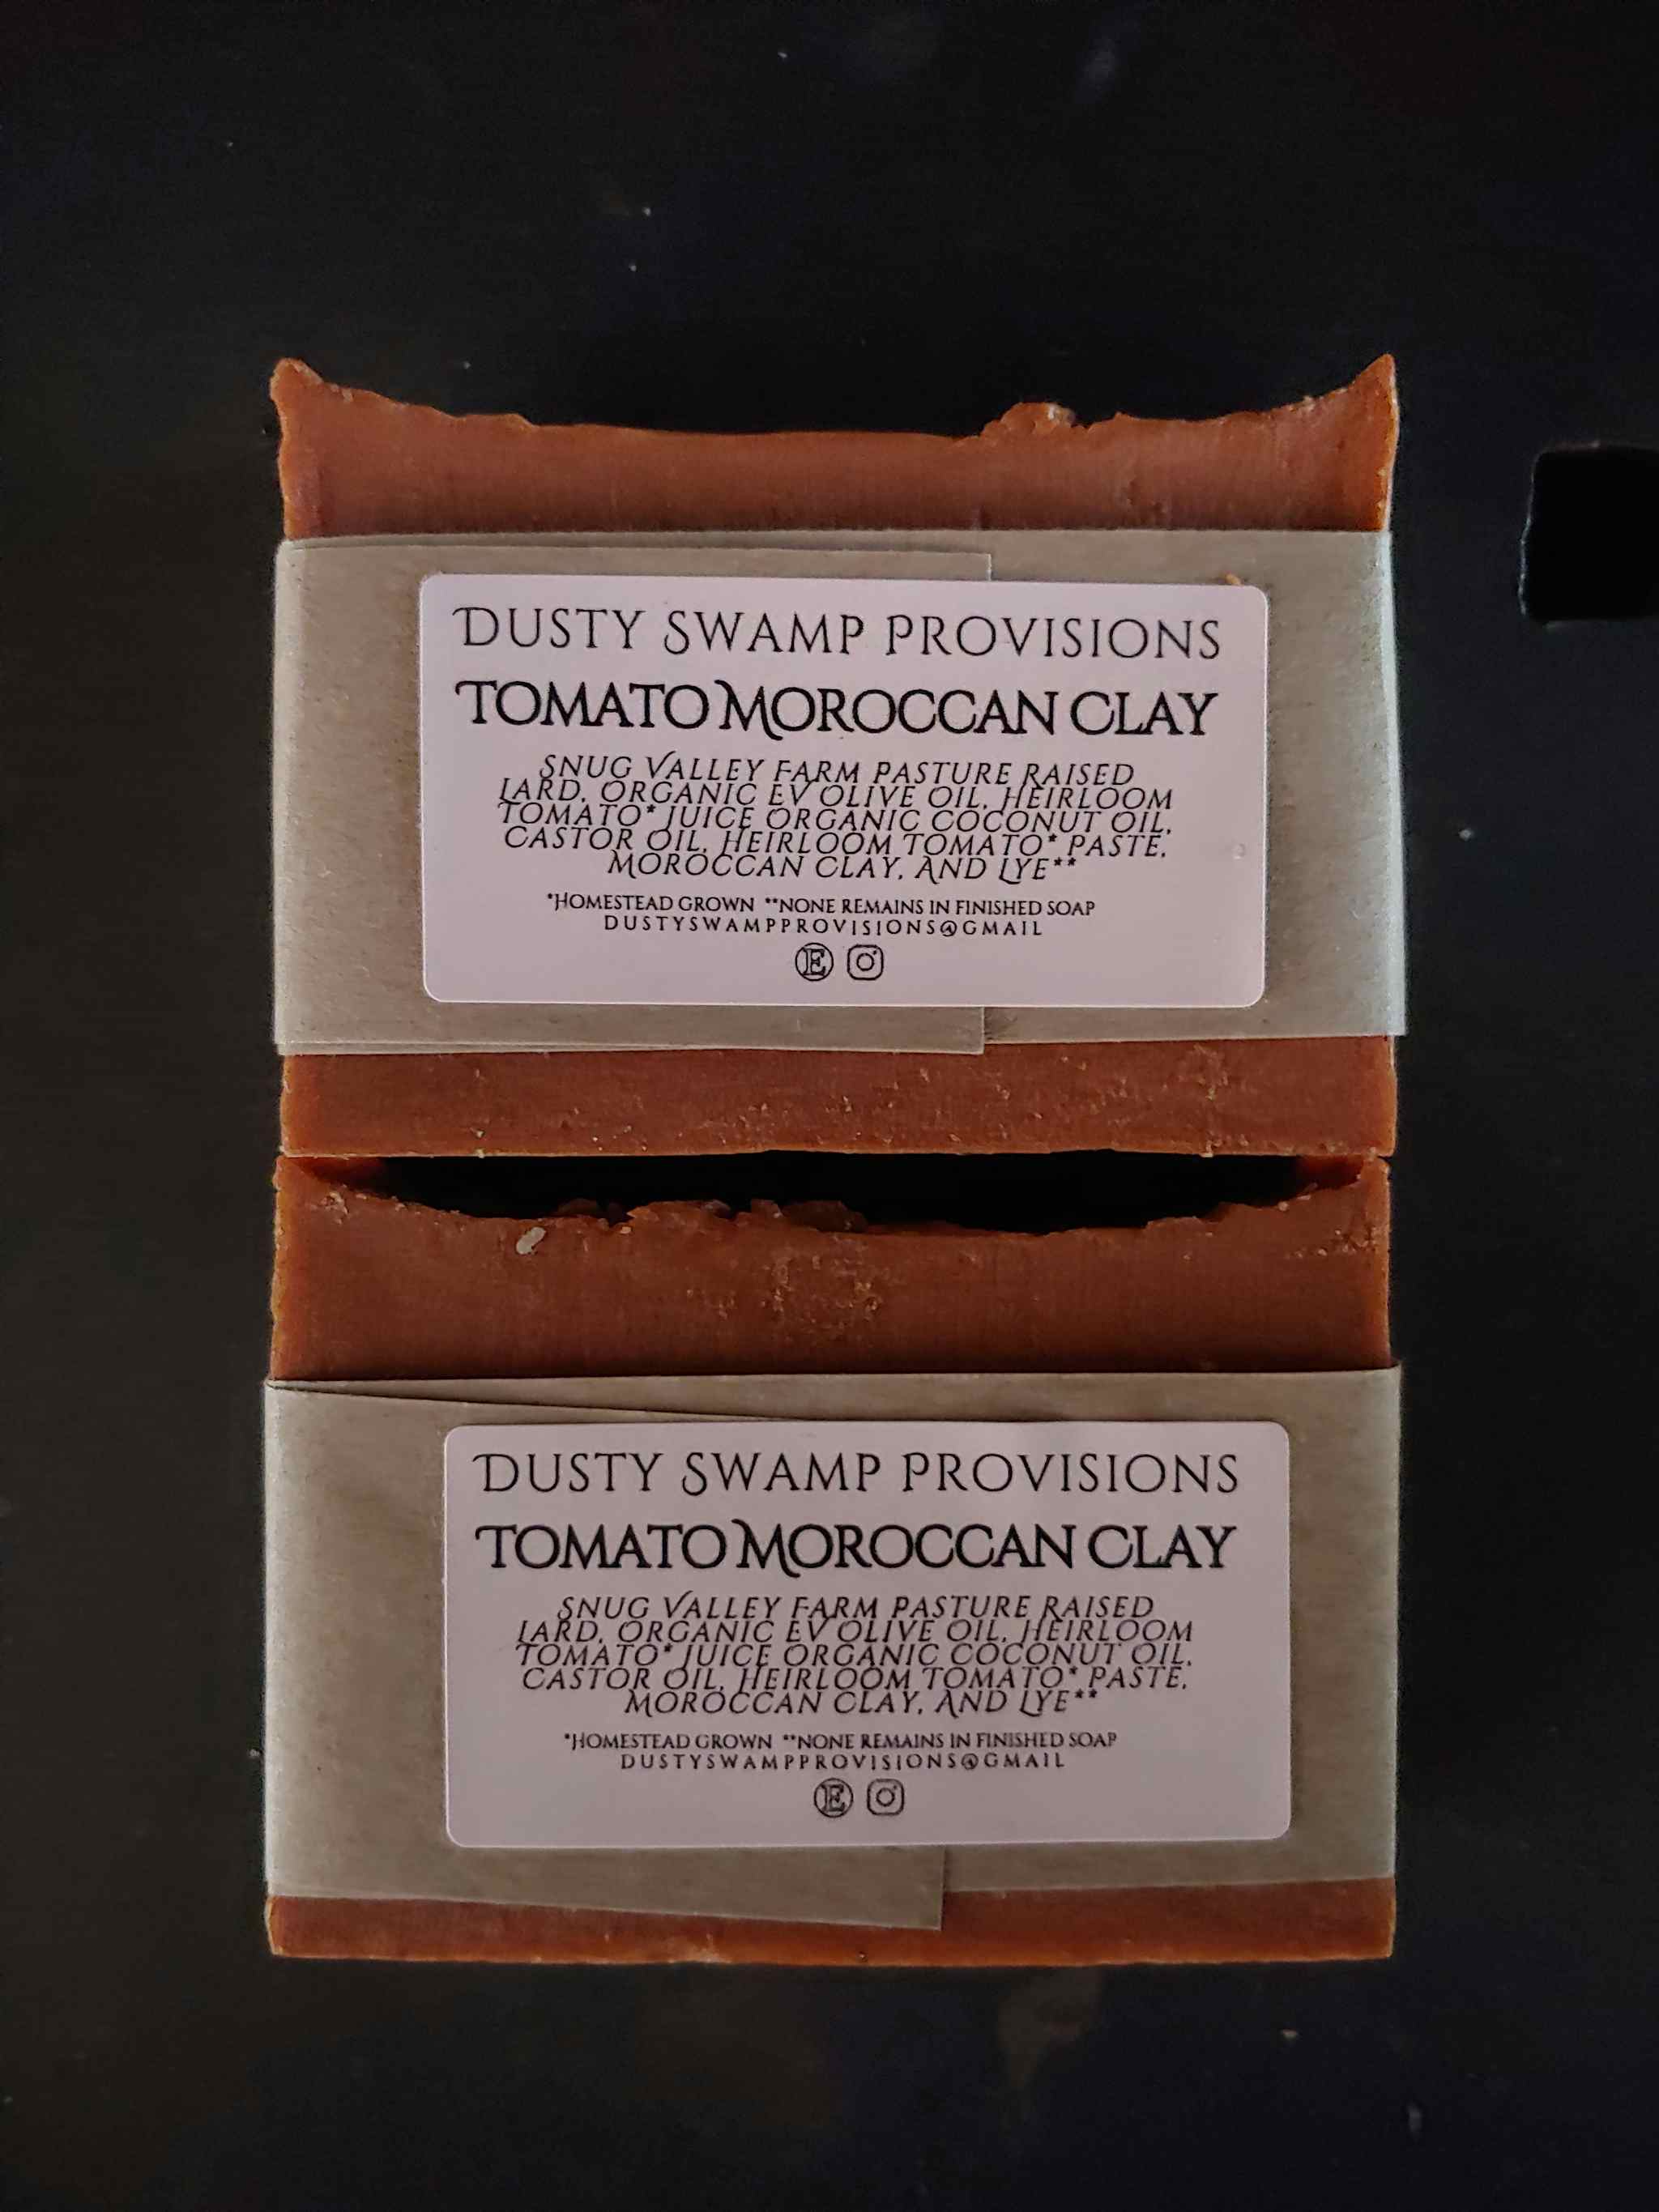 Tomato Moroccan Clay Lard Soap